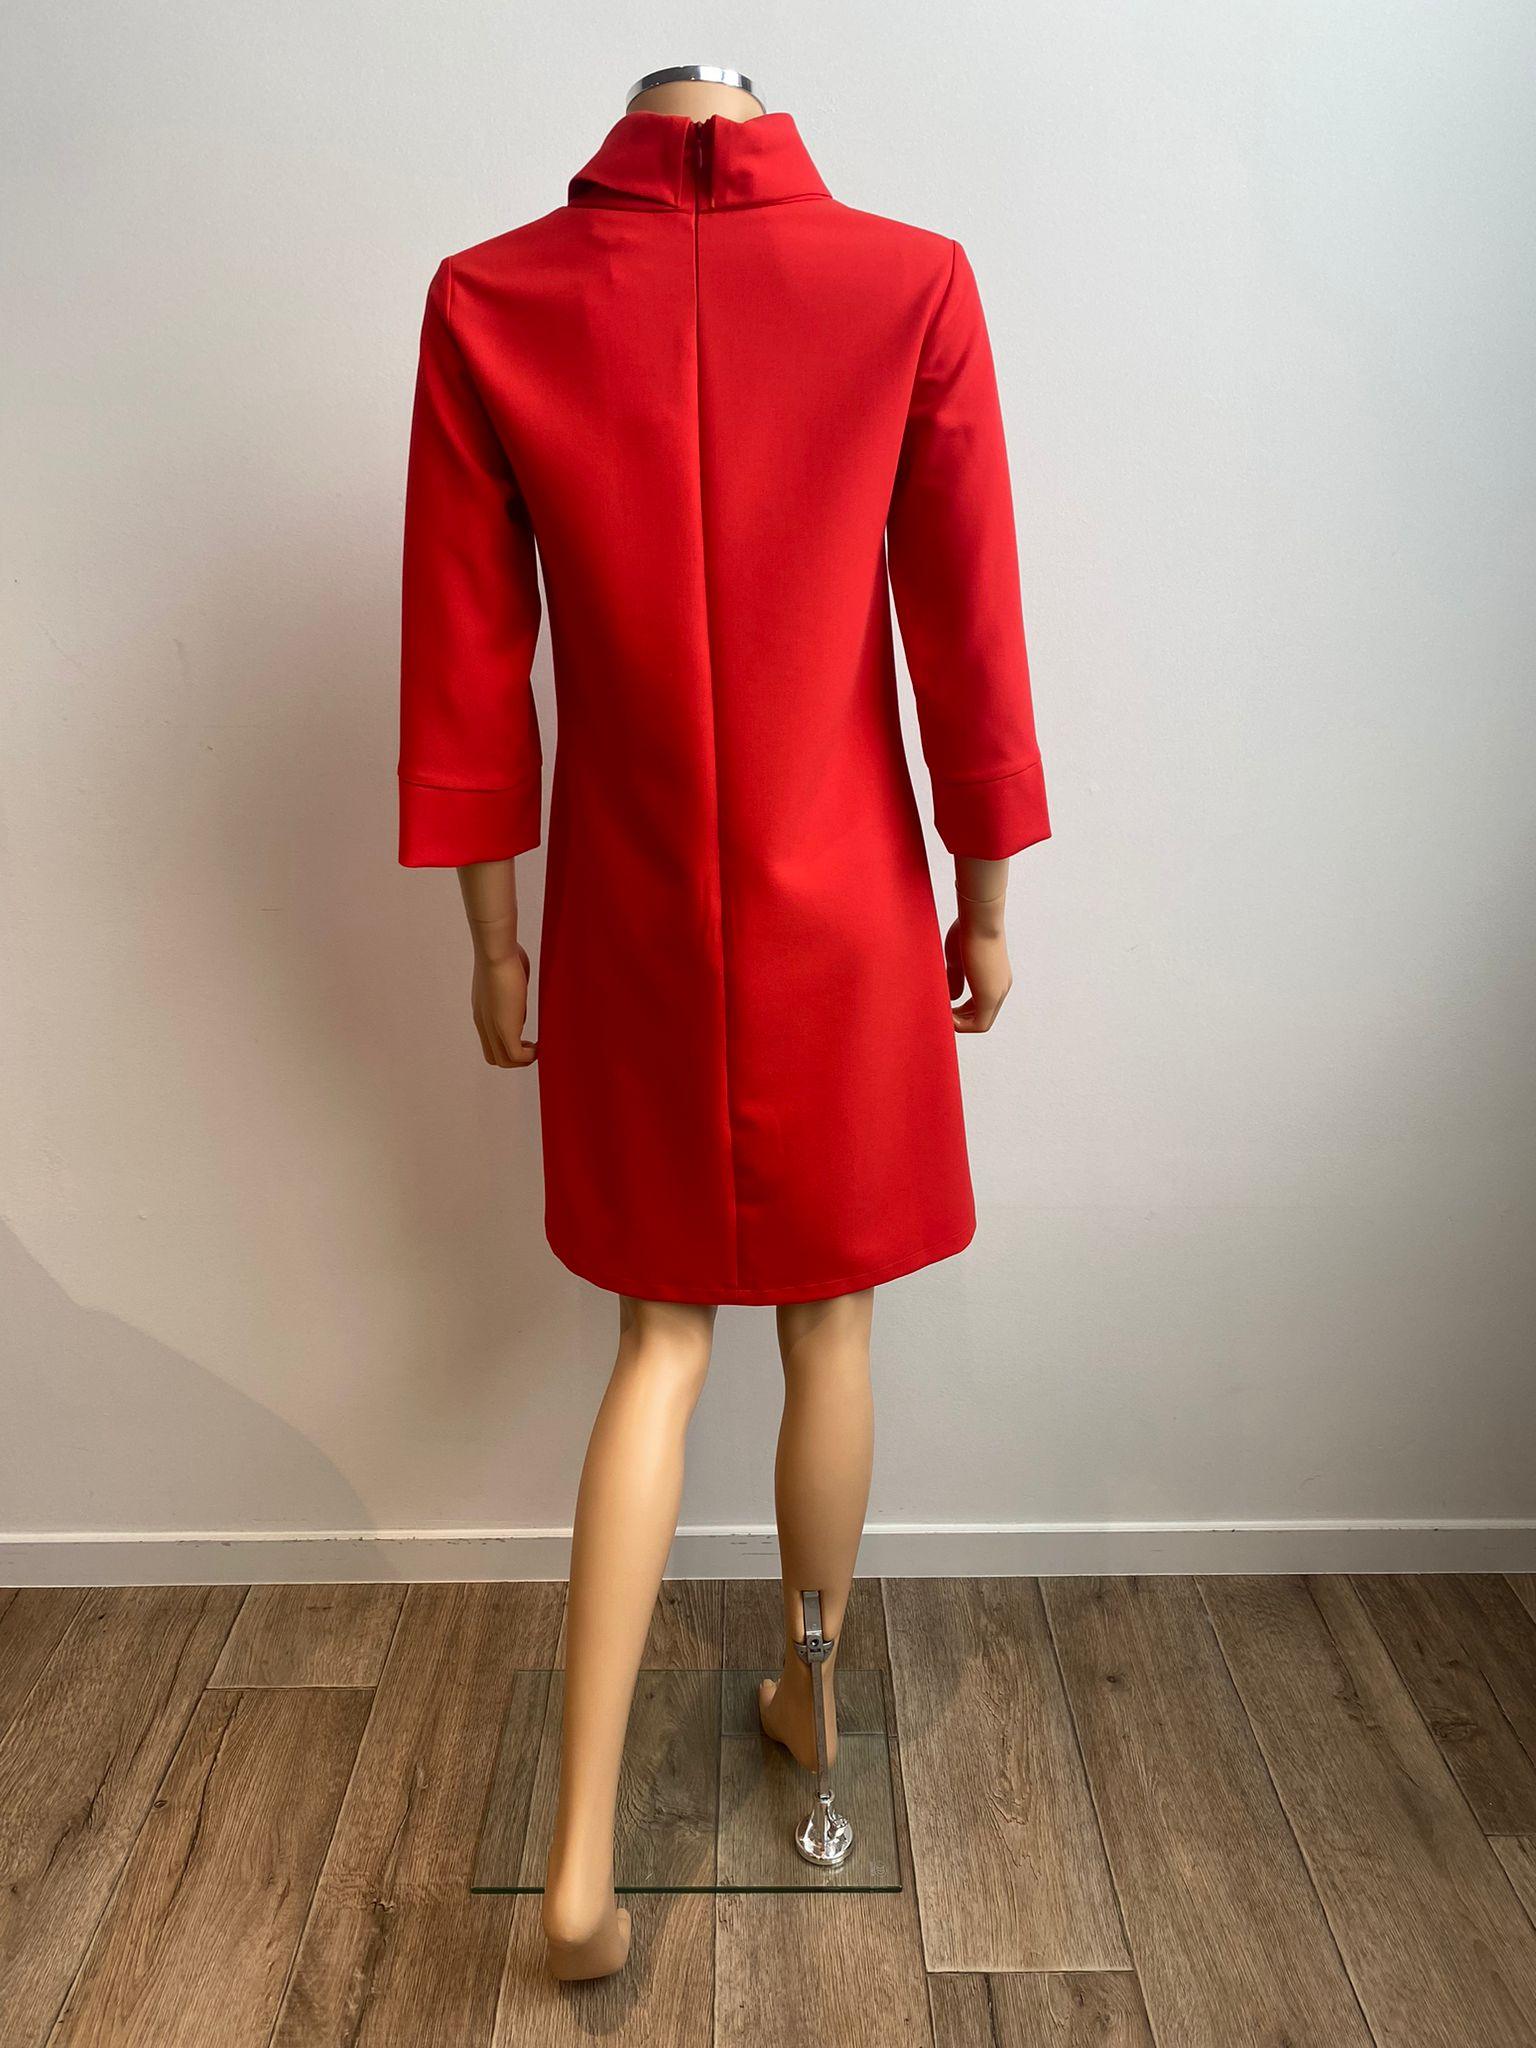 Kleedje Rood Senso ( 9593 Janelle Red ) - Delaere Womenswear